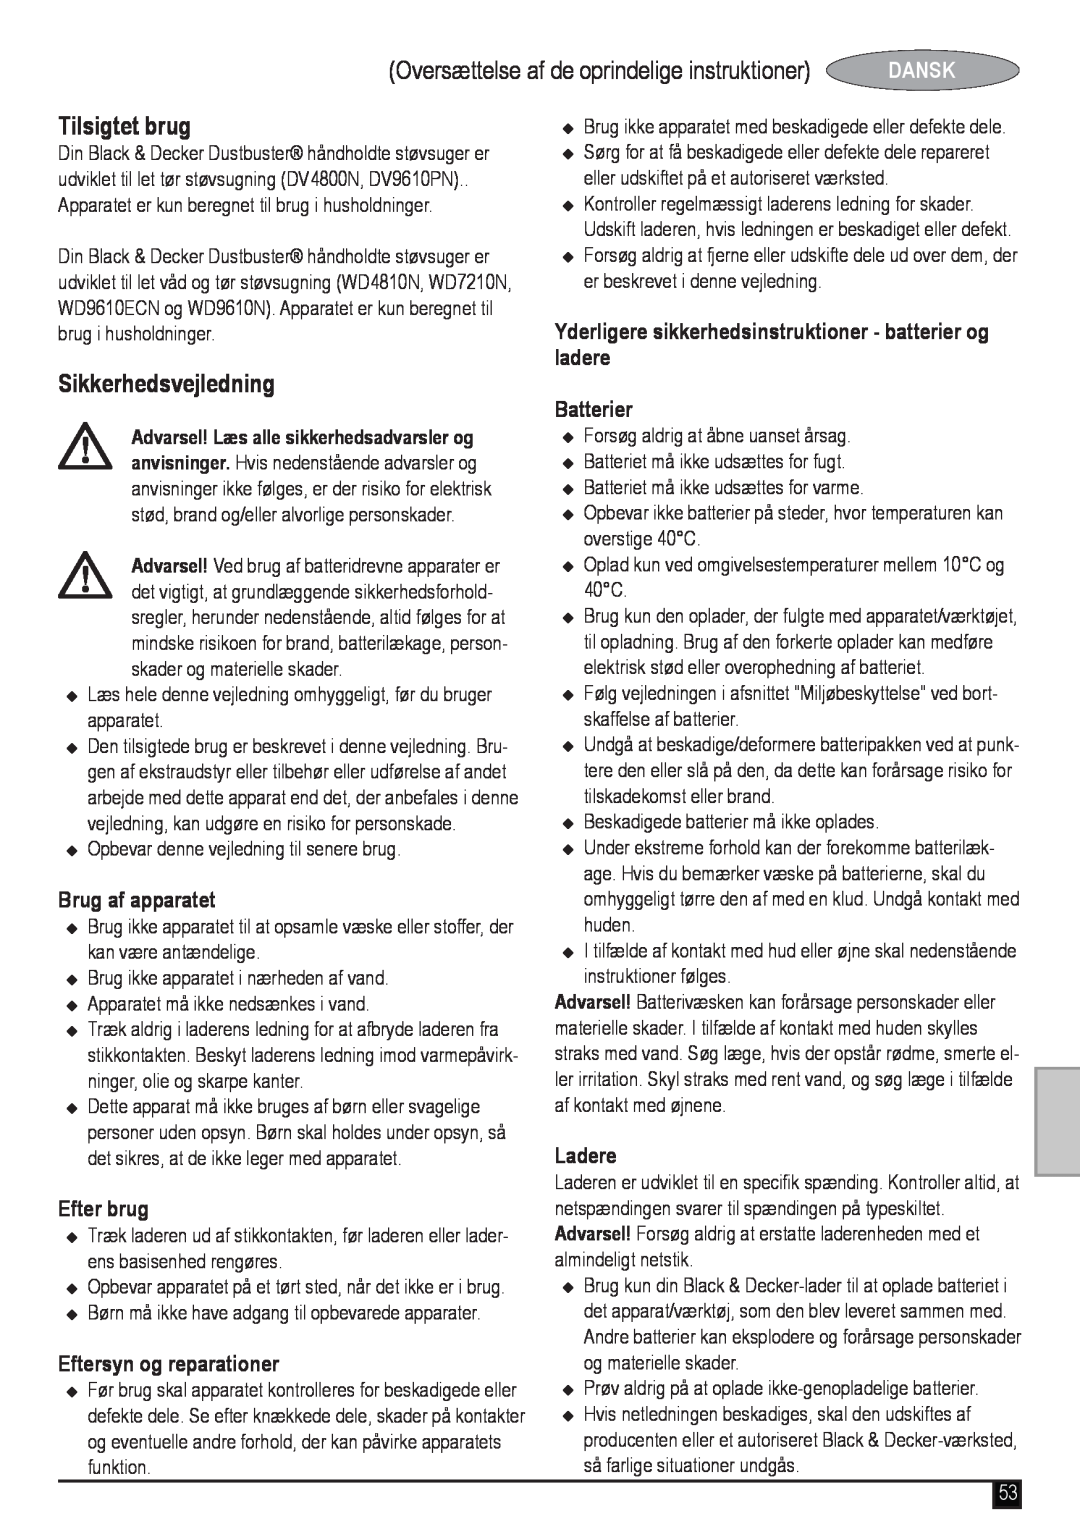 Black & Decker WD7210N Oversættelse af de oprindelige instruktioner, Tilsigtet brug, @Sikkerhedsvejledning, Dansk, Ladere 